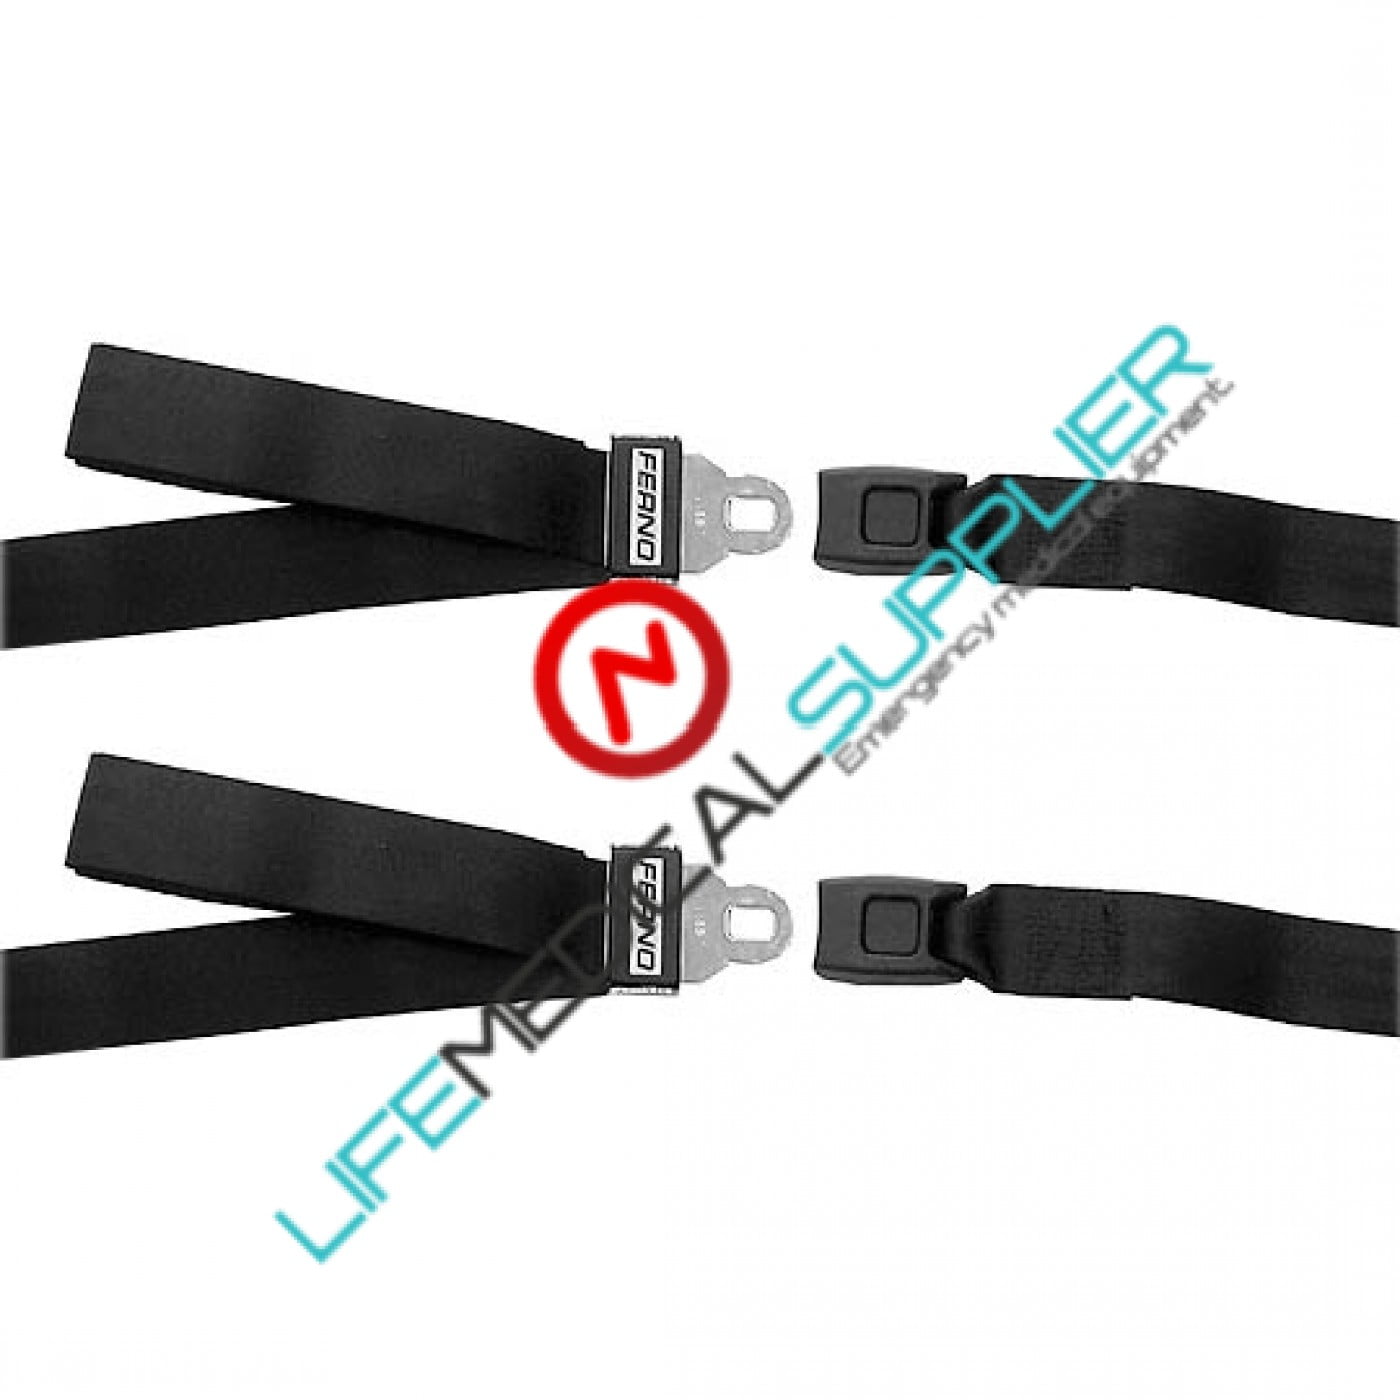 Backboard nylon straps plastic side release w/looplok ends, 2 PC, 7